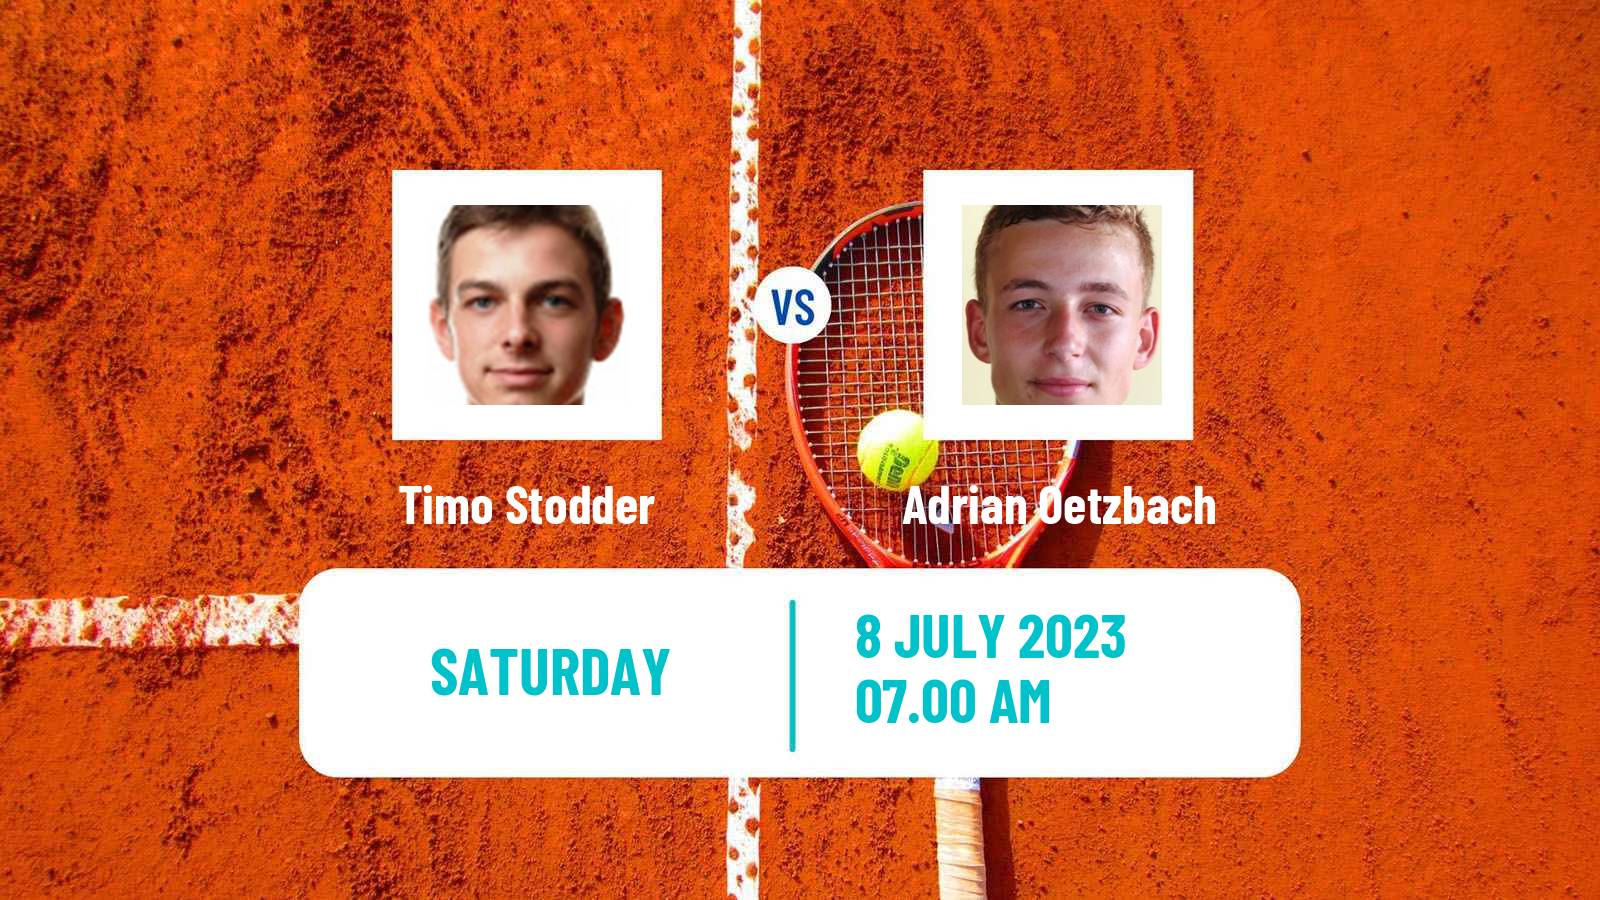 Tennis ITF M25 Marburg Men Timo Stodder - Adrian Oetzbach